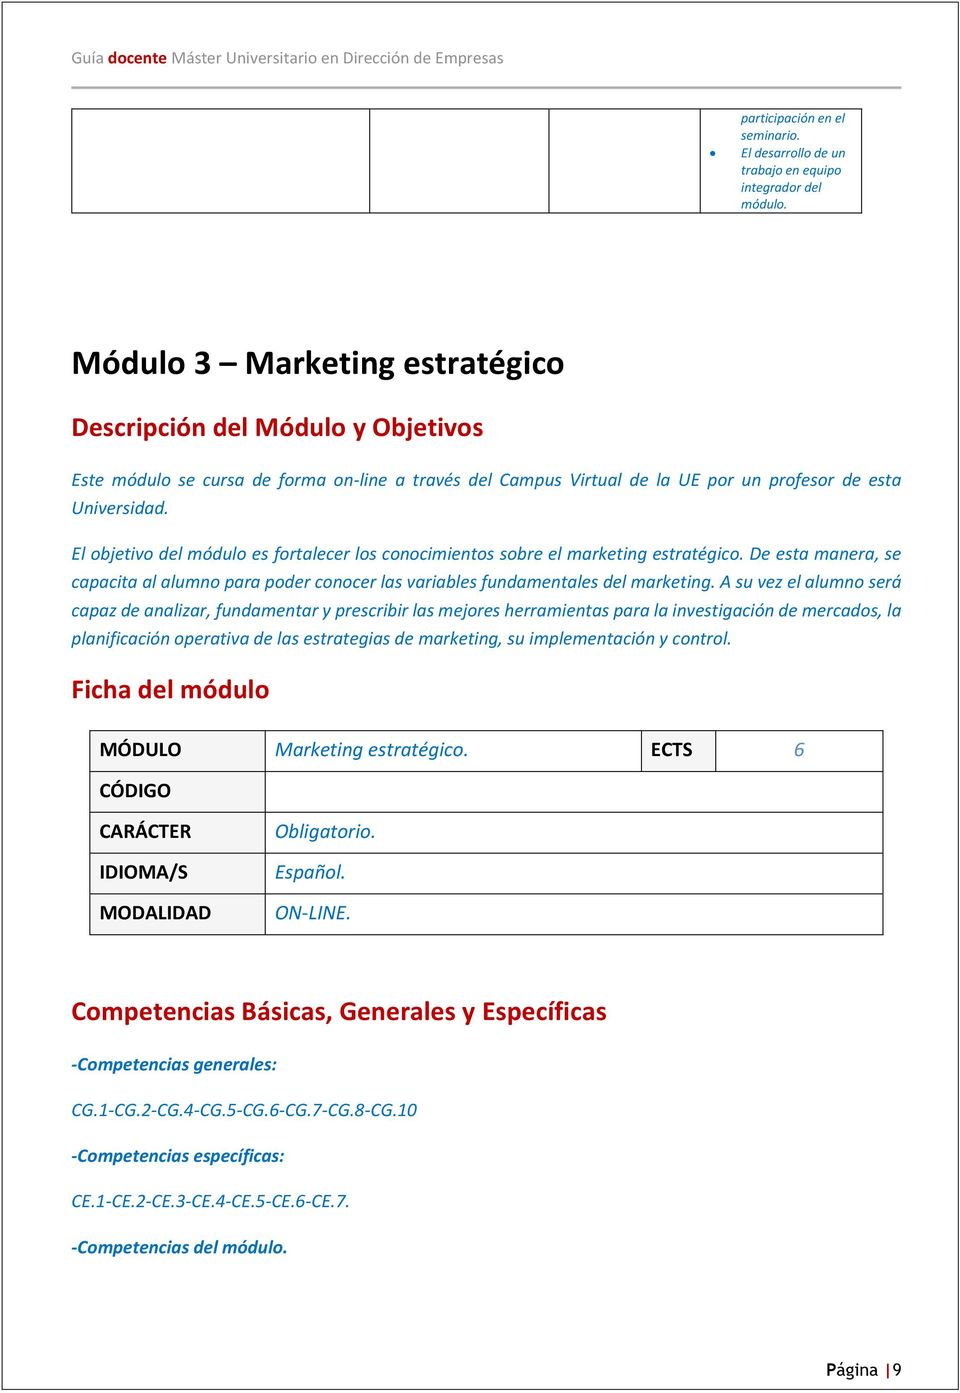 El objetivo del módulo es fortalecer los conocimientos sobre el marketing estratégico. De esta manera, se capacita al alumno para poder conocer las variables fundamentales del marketing.